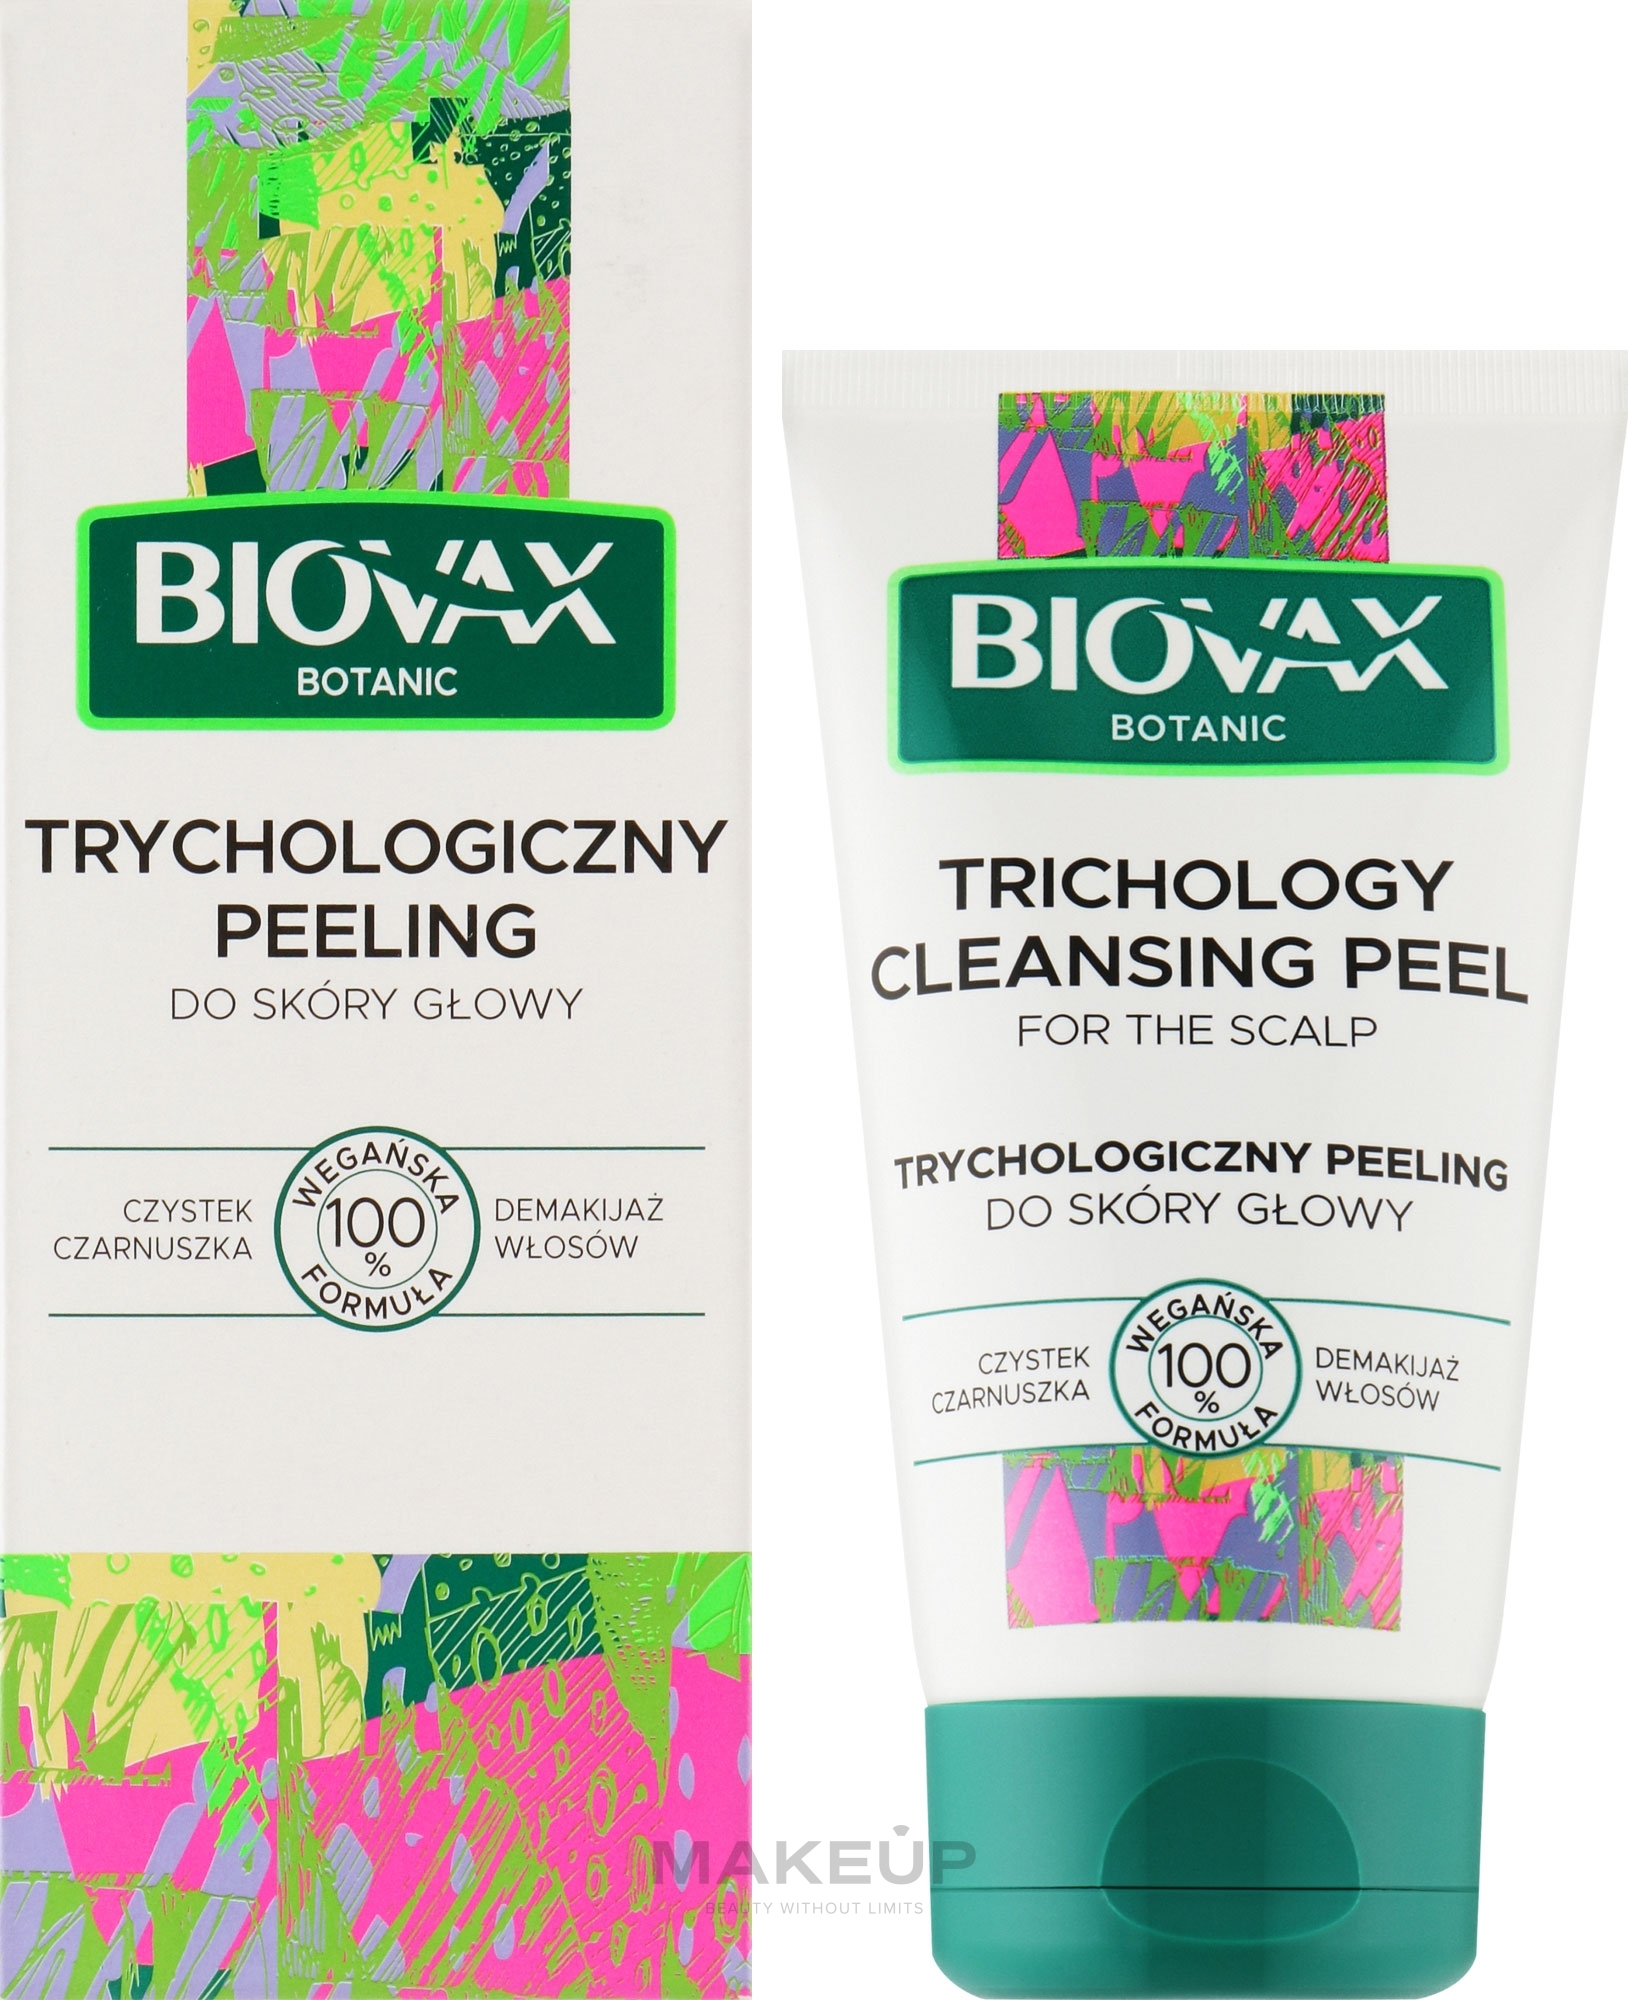 Trichological Sculp Scrub "Cistus and Black Cumin" - L'biotica Biovax Botanic Peeling — photo 125 ml